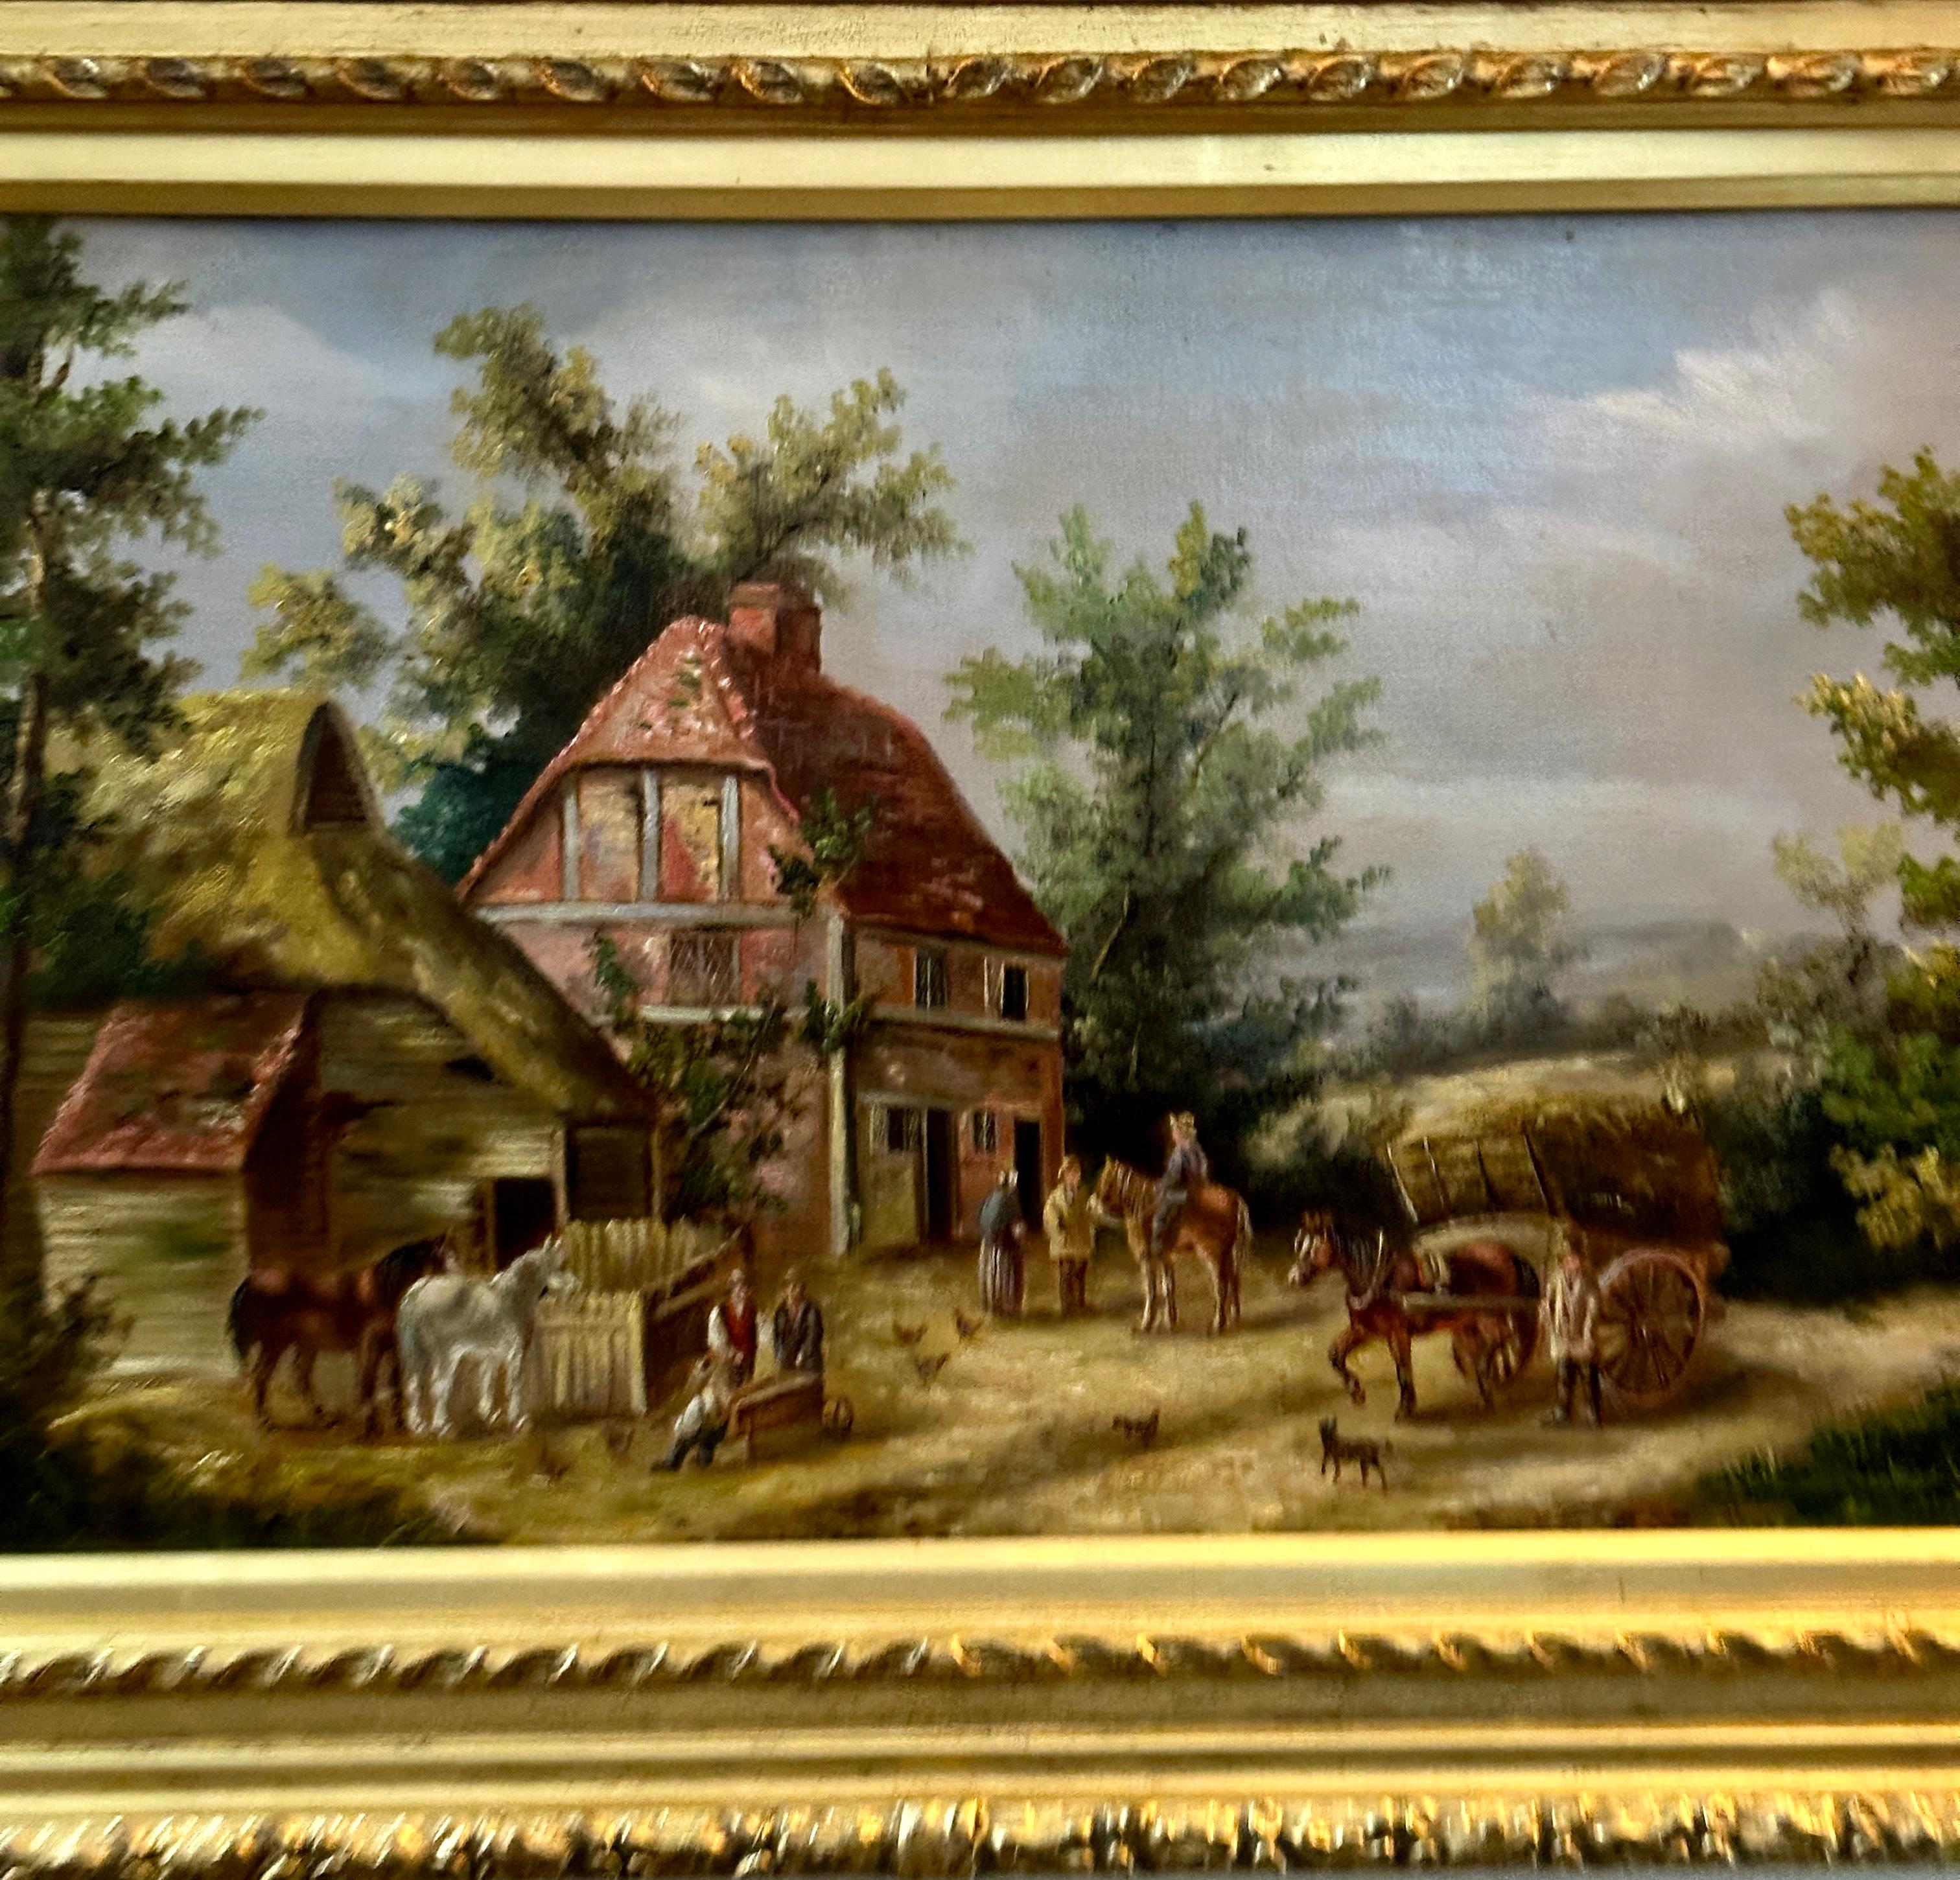 Scène de village anglaise du 19e siècle avec cottages, chevaux et personnes - Painting de Georgina Lara